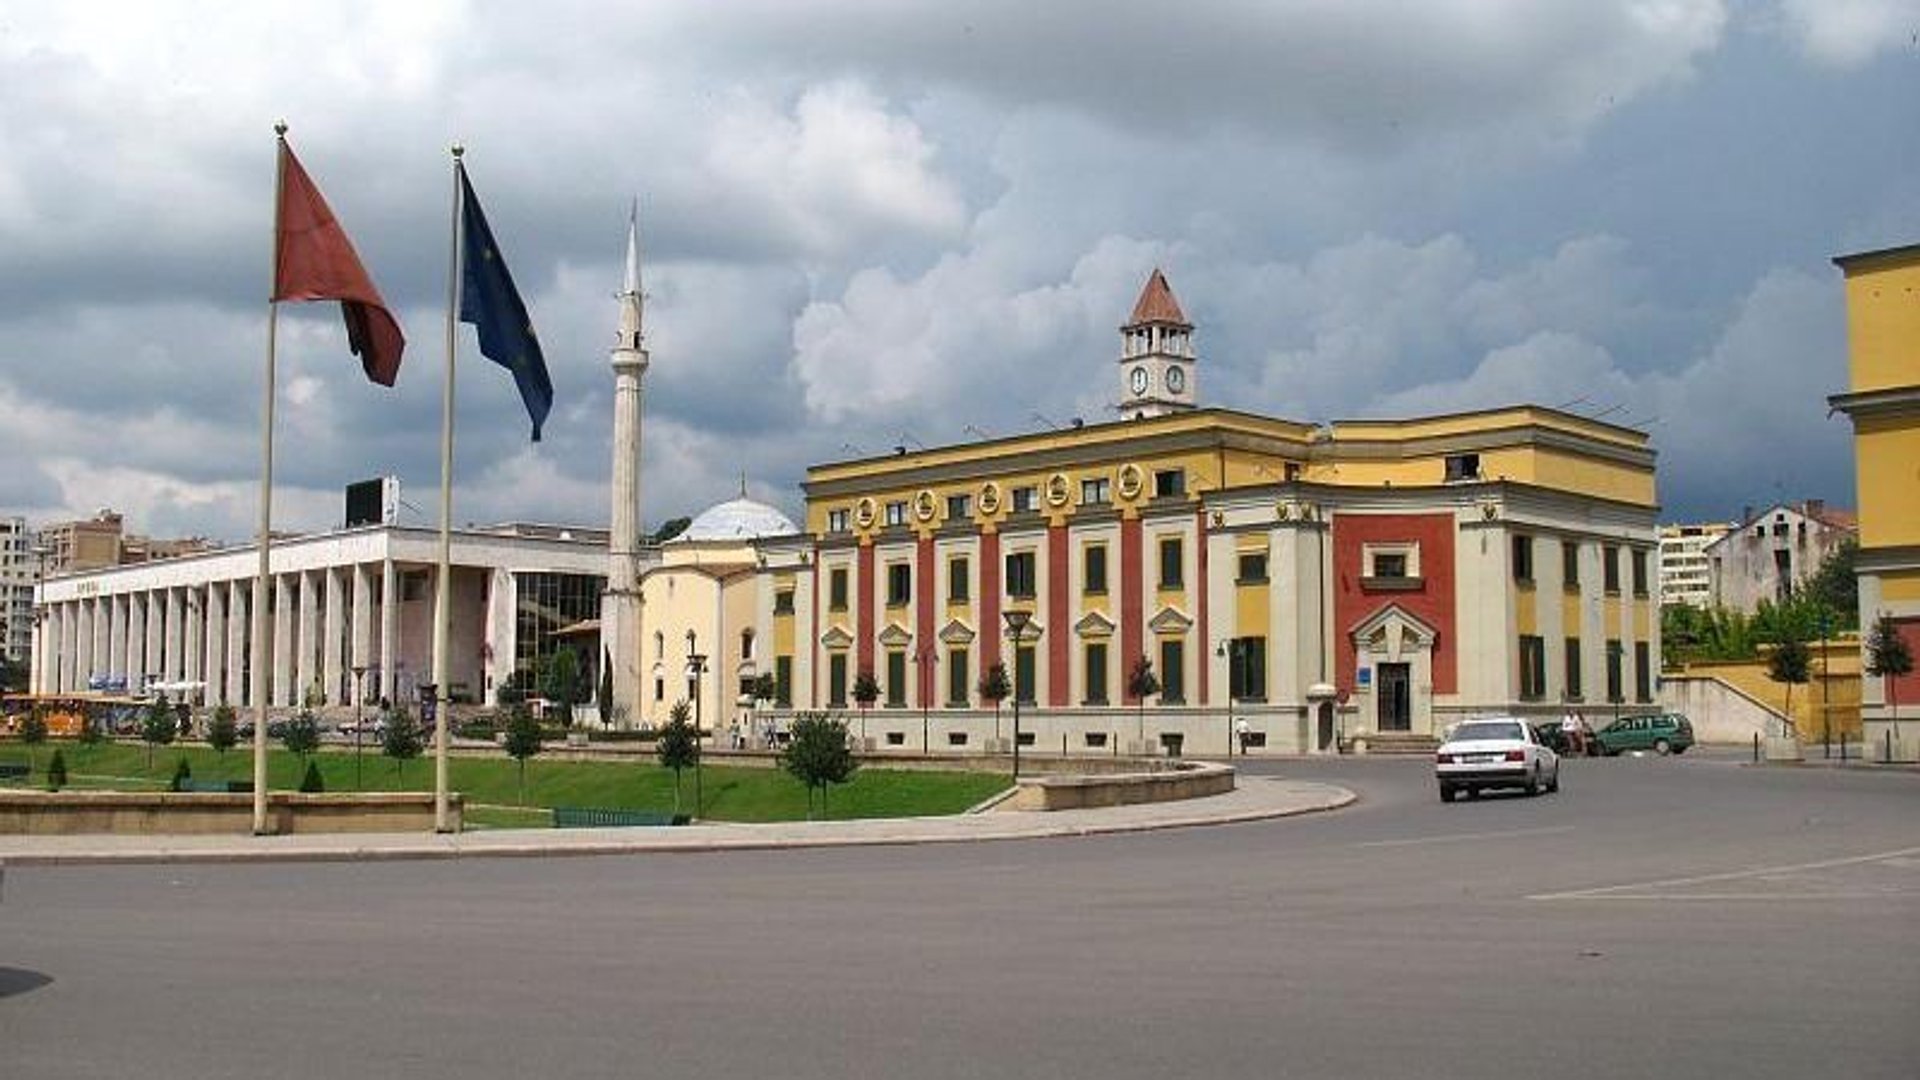 Tirana city hall - Skanderbeg square